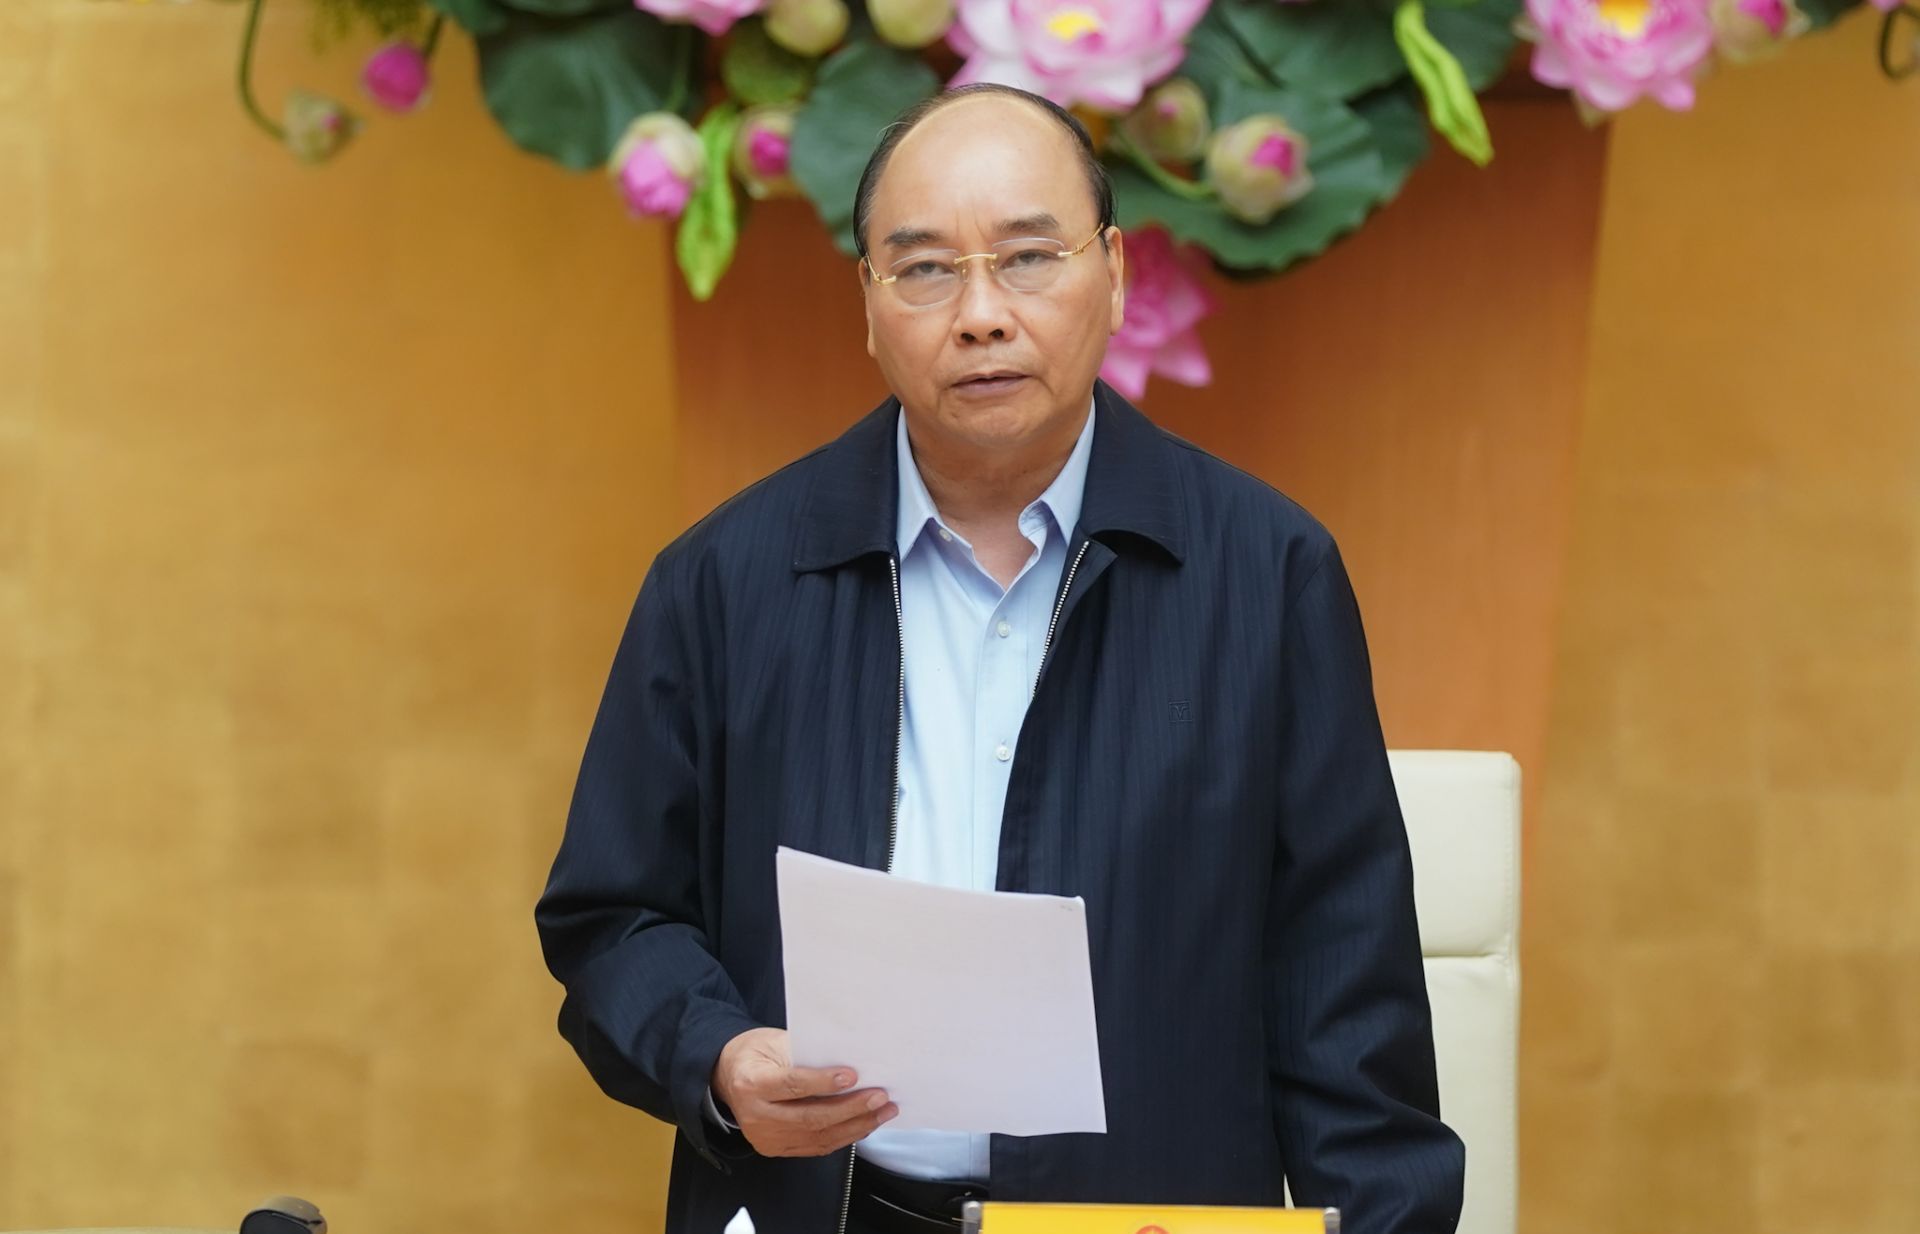 Thủ tướng Nguyễn Xuân Phúc đồng ý công bố dịch Covid-19 trên toàn quốc